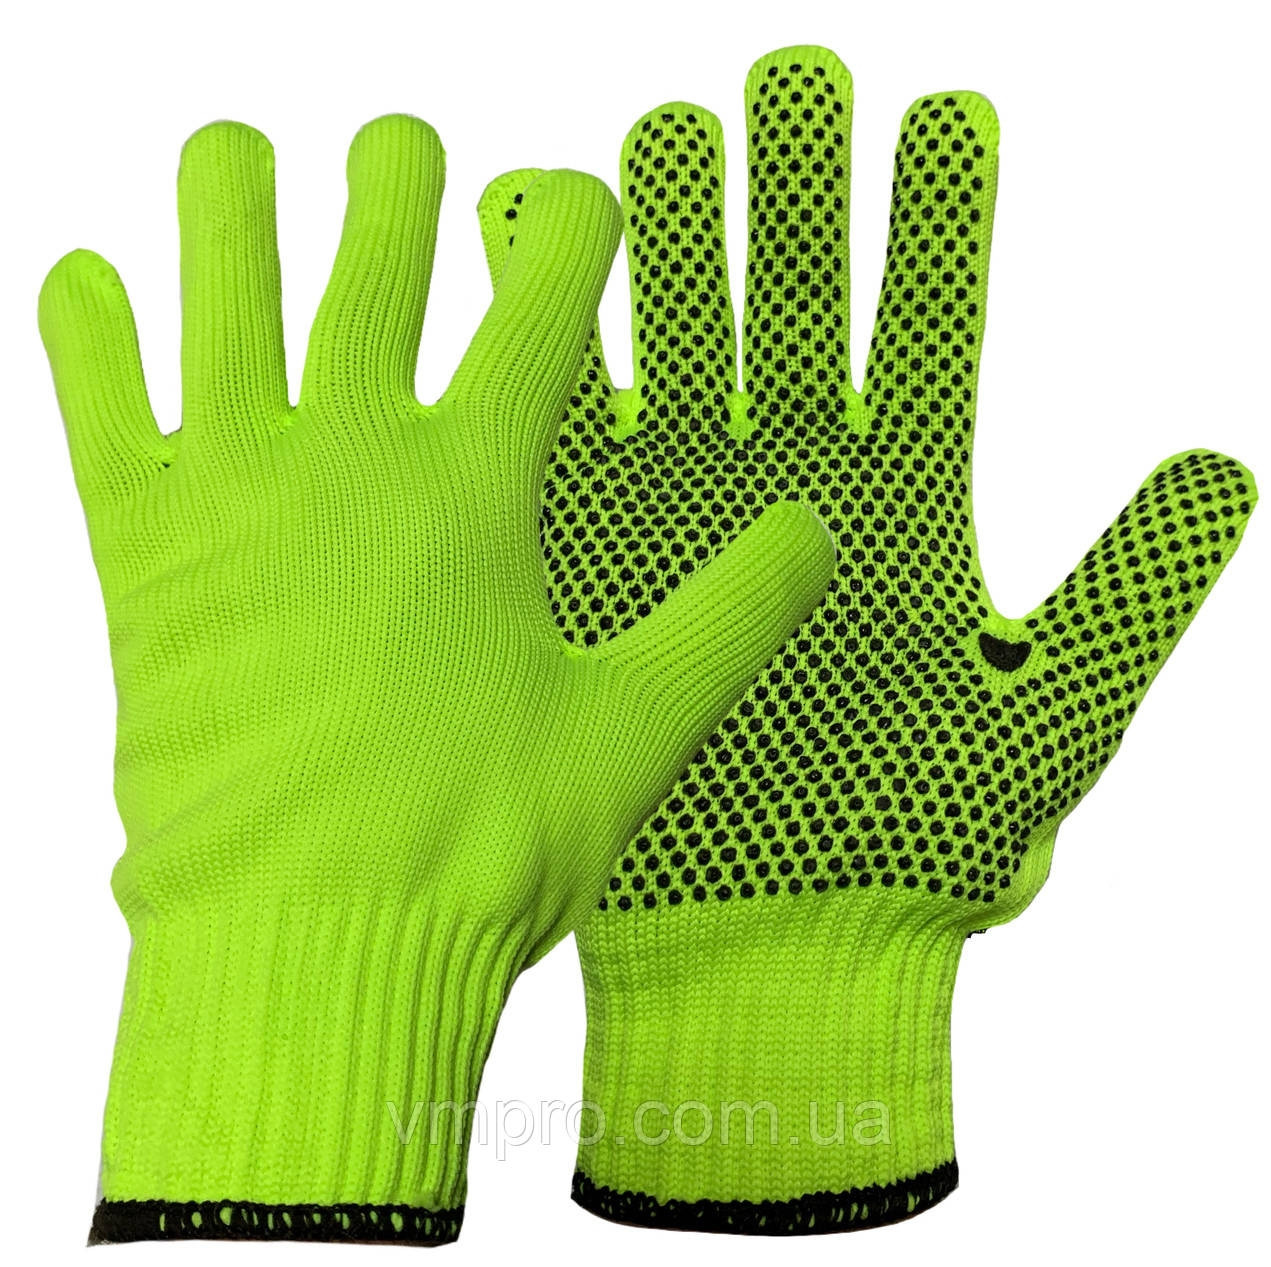 Захисні рукавички синтетичні з точкою зеленого кольору "Синтетика Зелена"